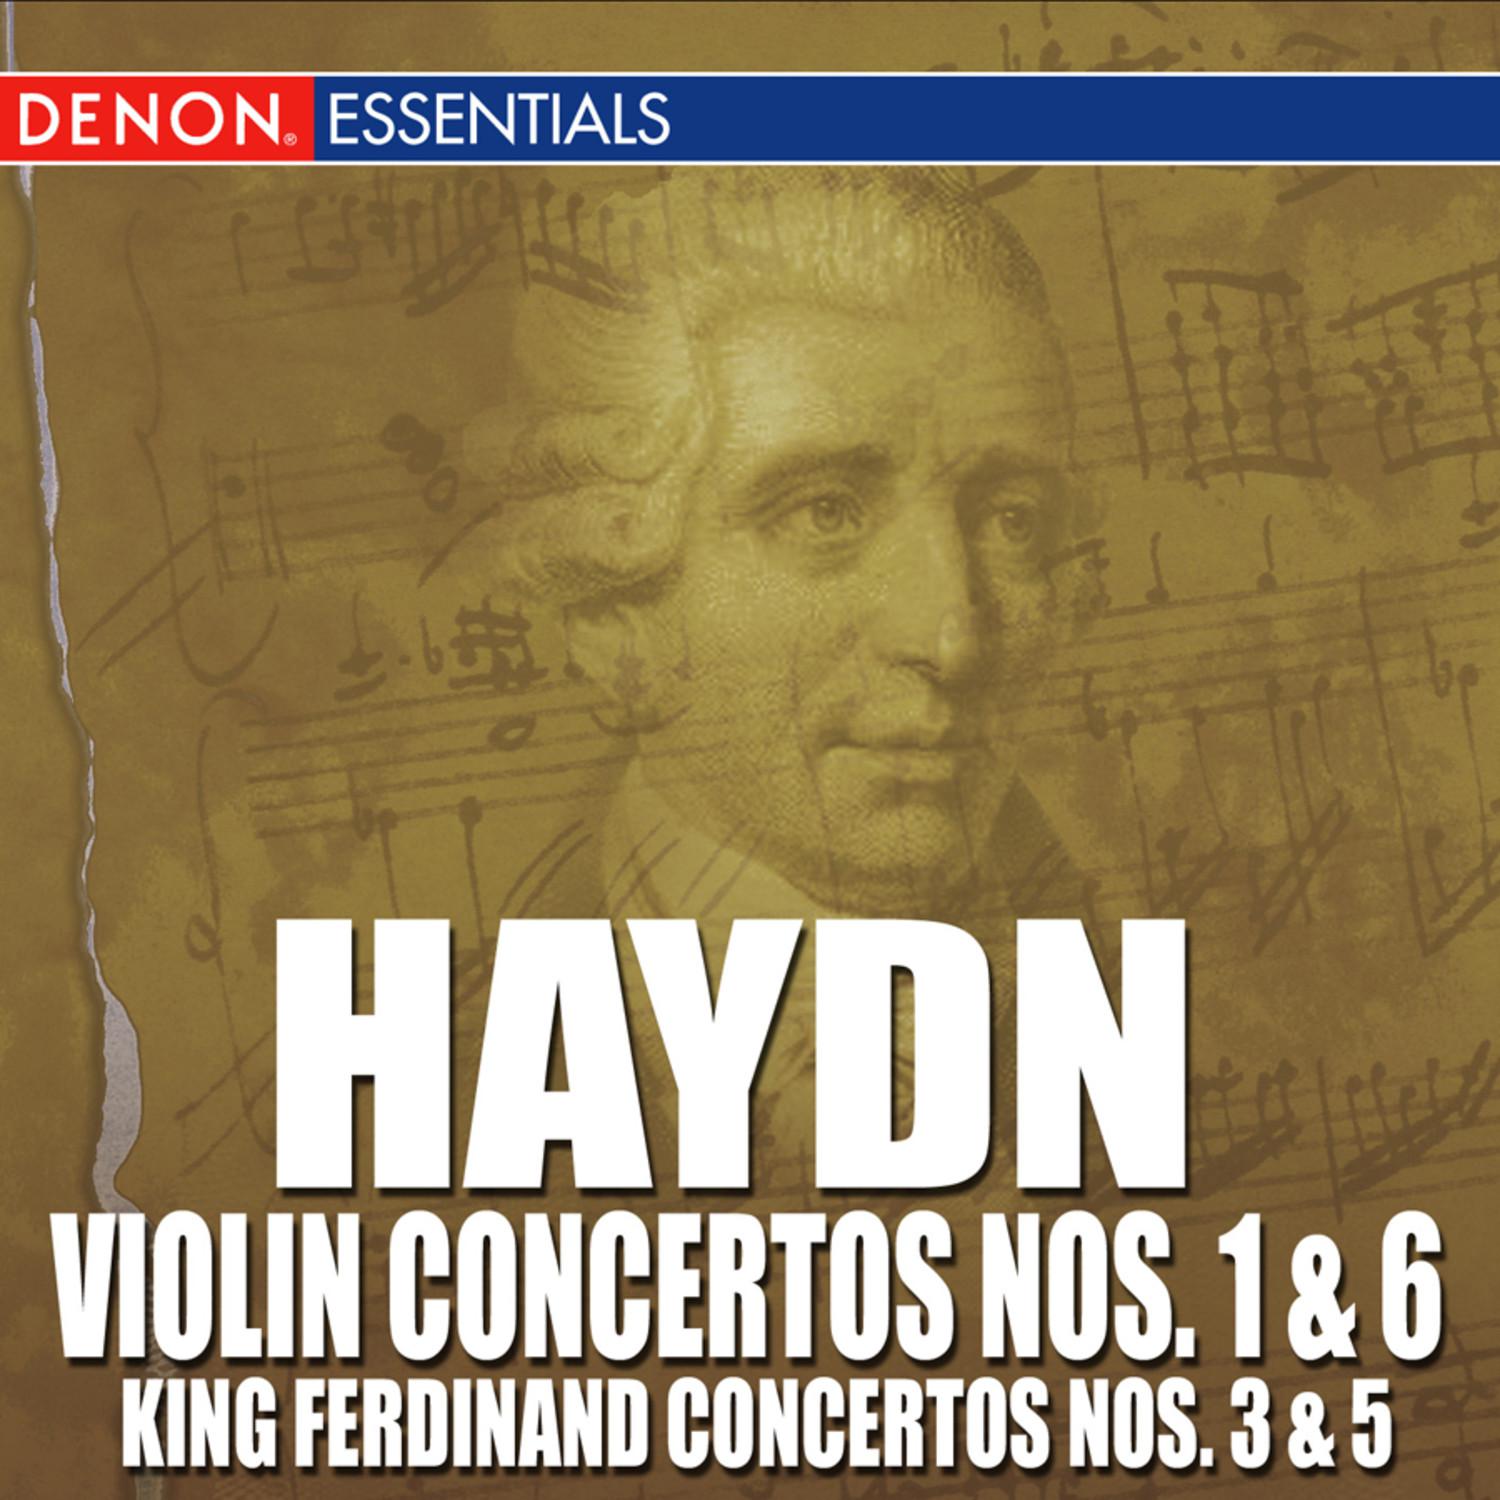 Concerto No. 5 for King Ferdinand IV. of Napoli in F Major, Hob. VII / 5 "Lyren Concerto No. 5": III. Finale: Vivace